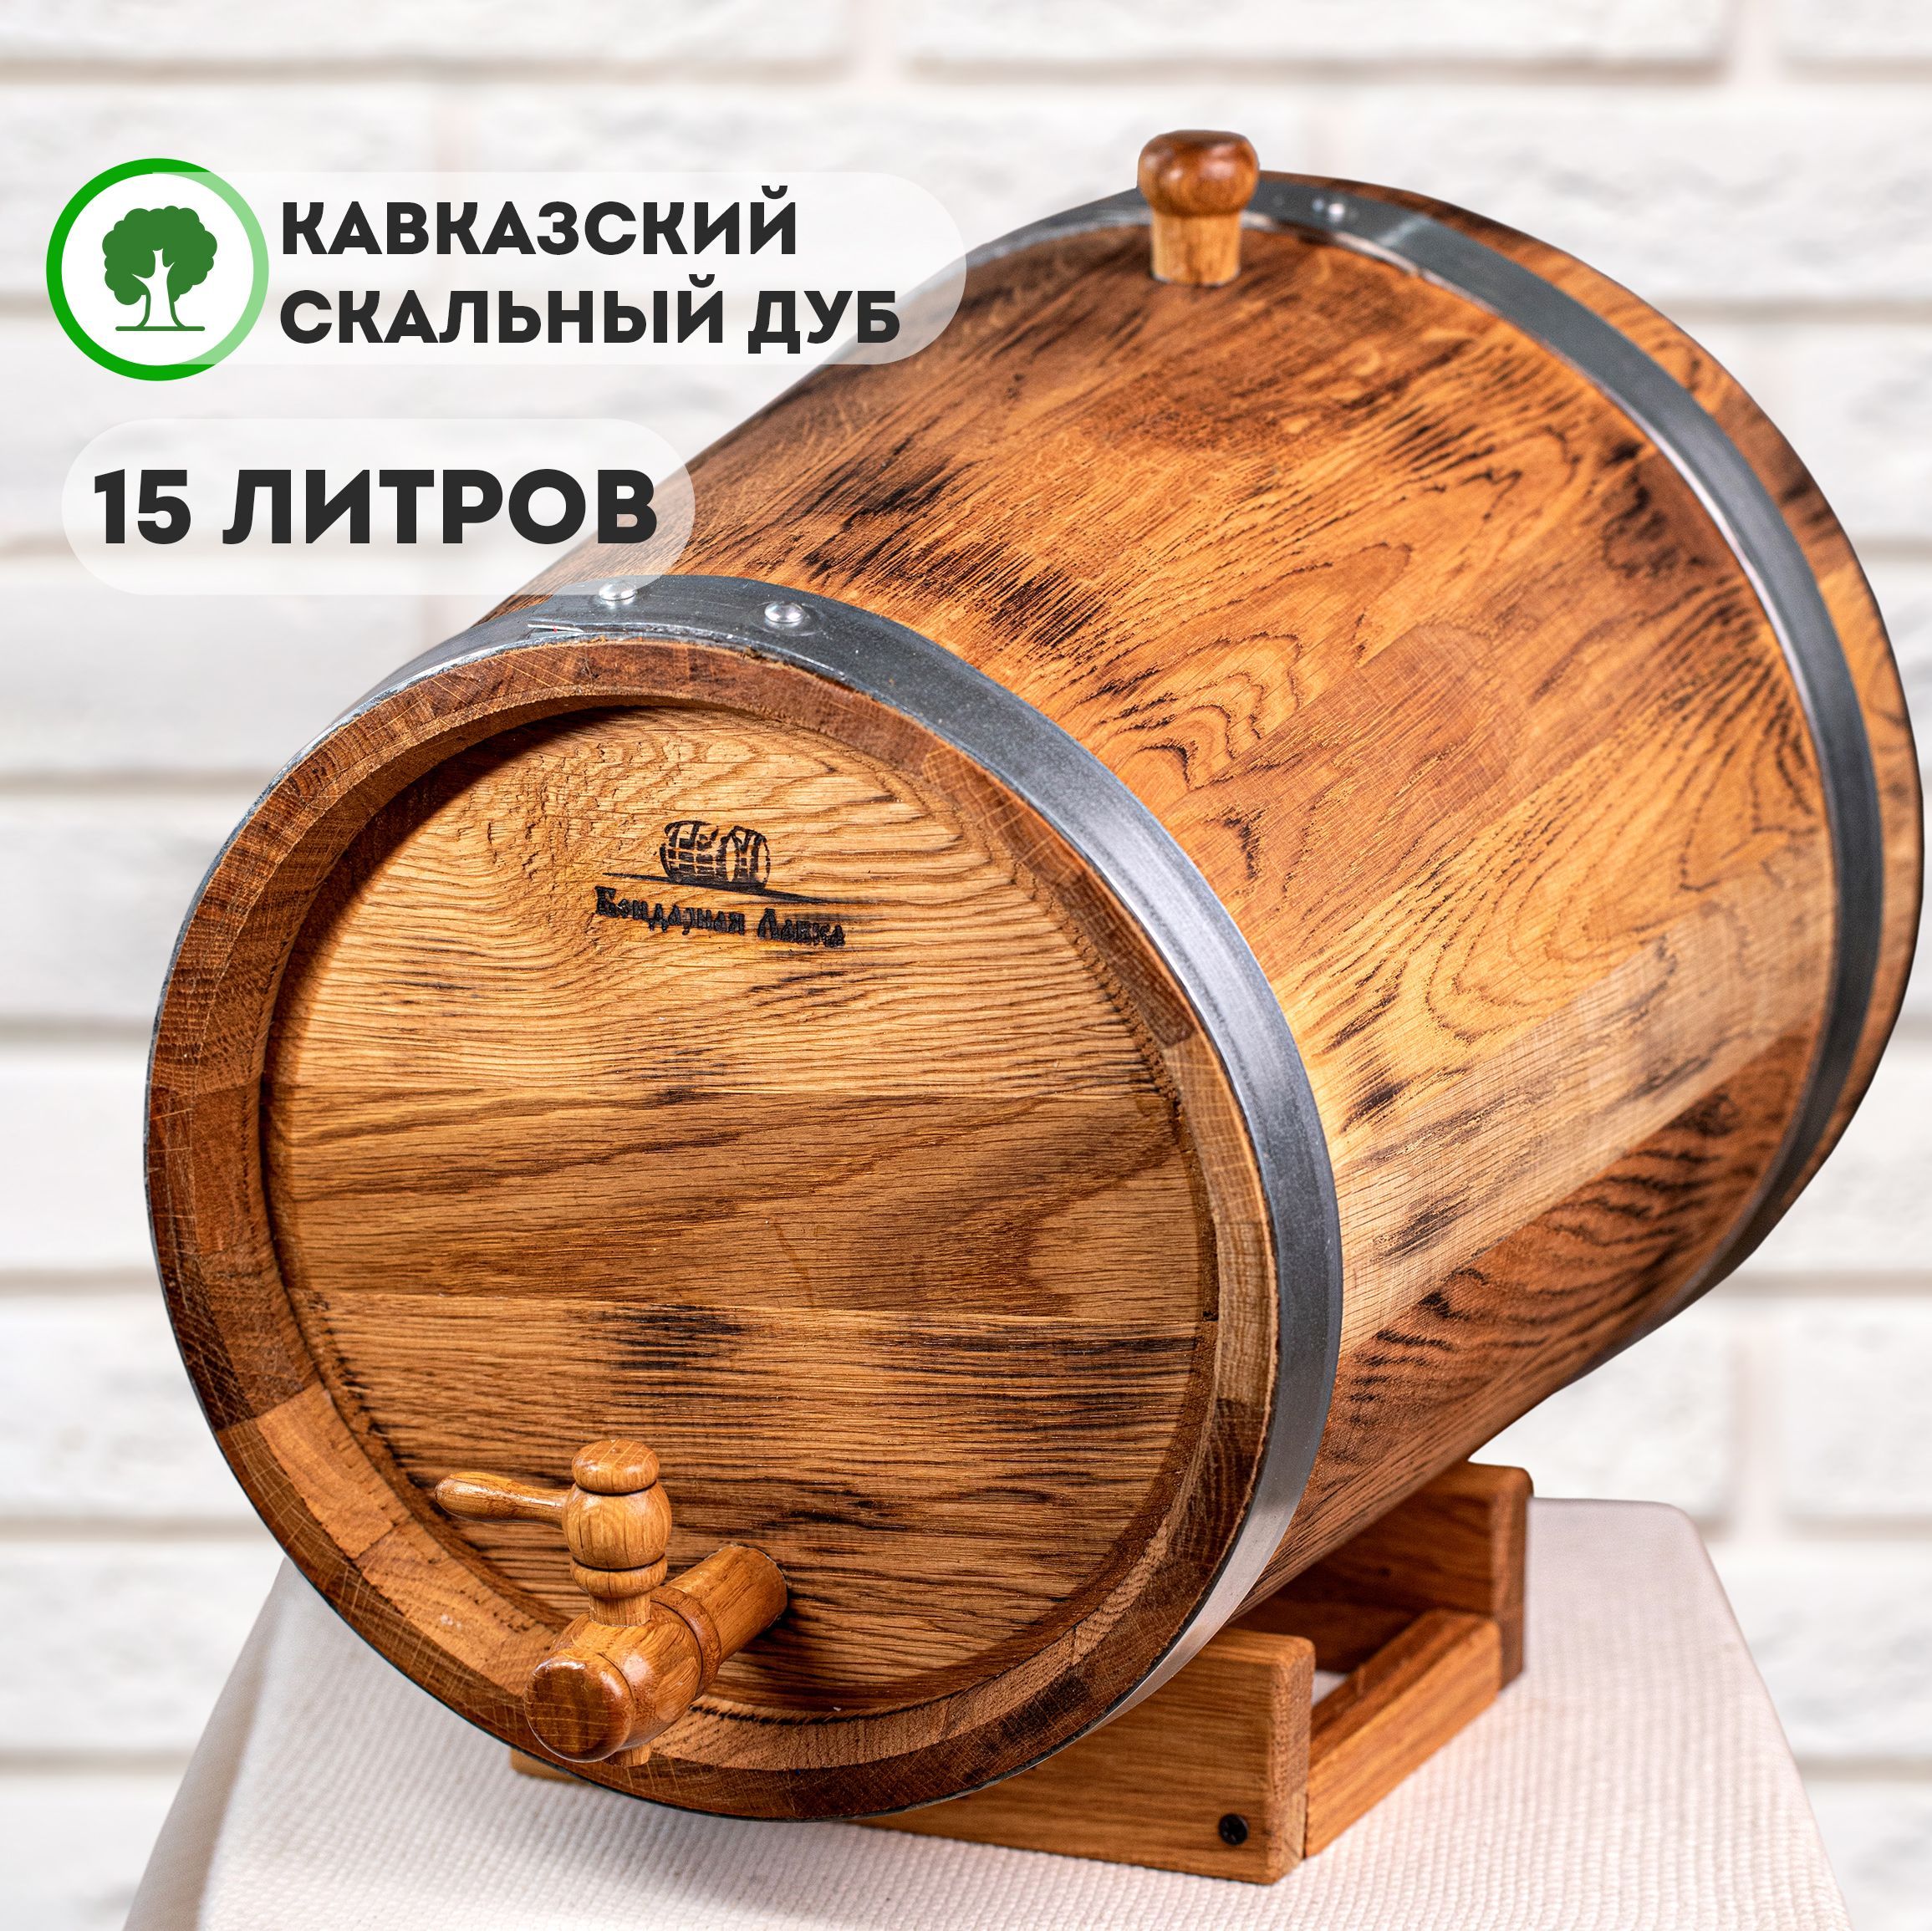 Купить дубовые бочки в Москве | Деревянные бочки для вина из дуба в интернет-магазине «Самодел»